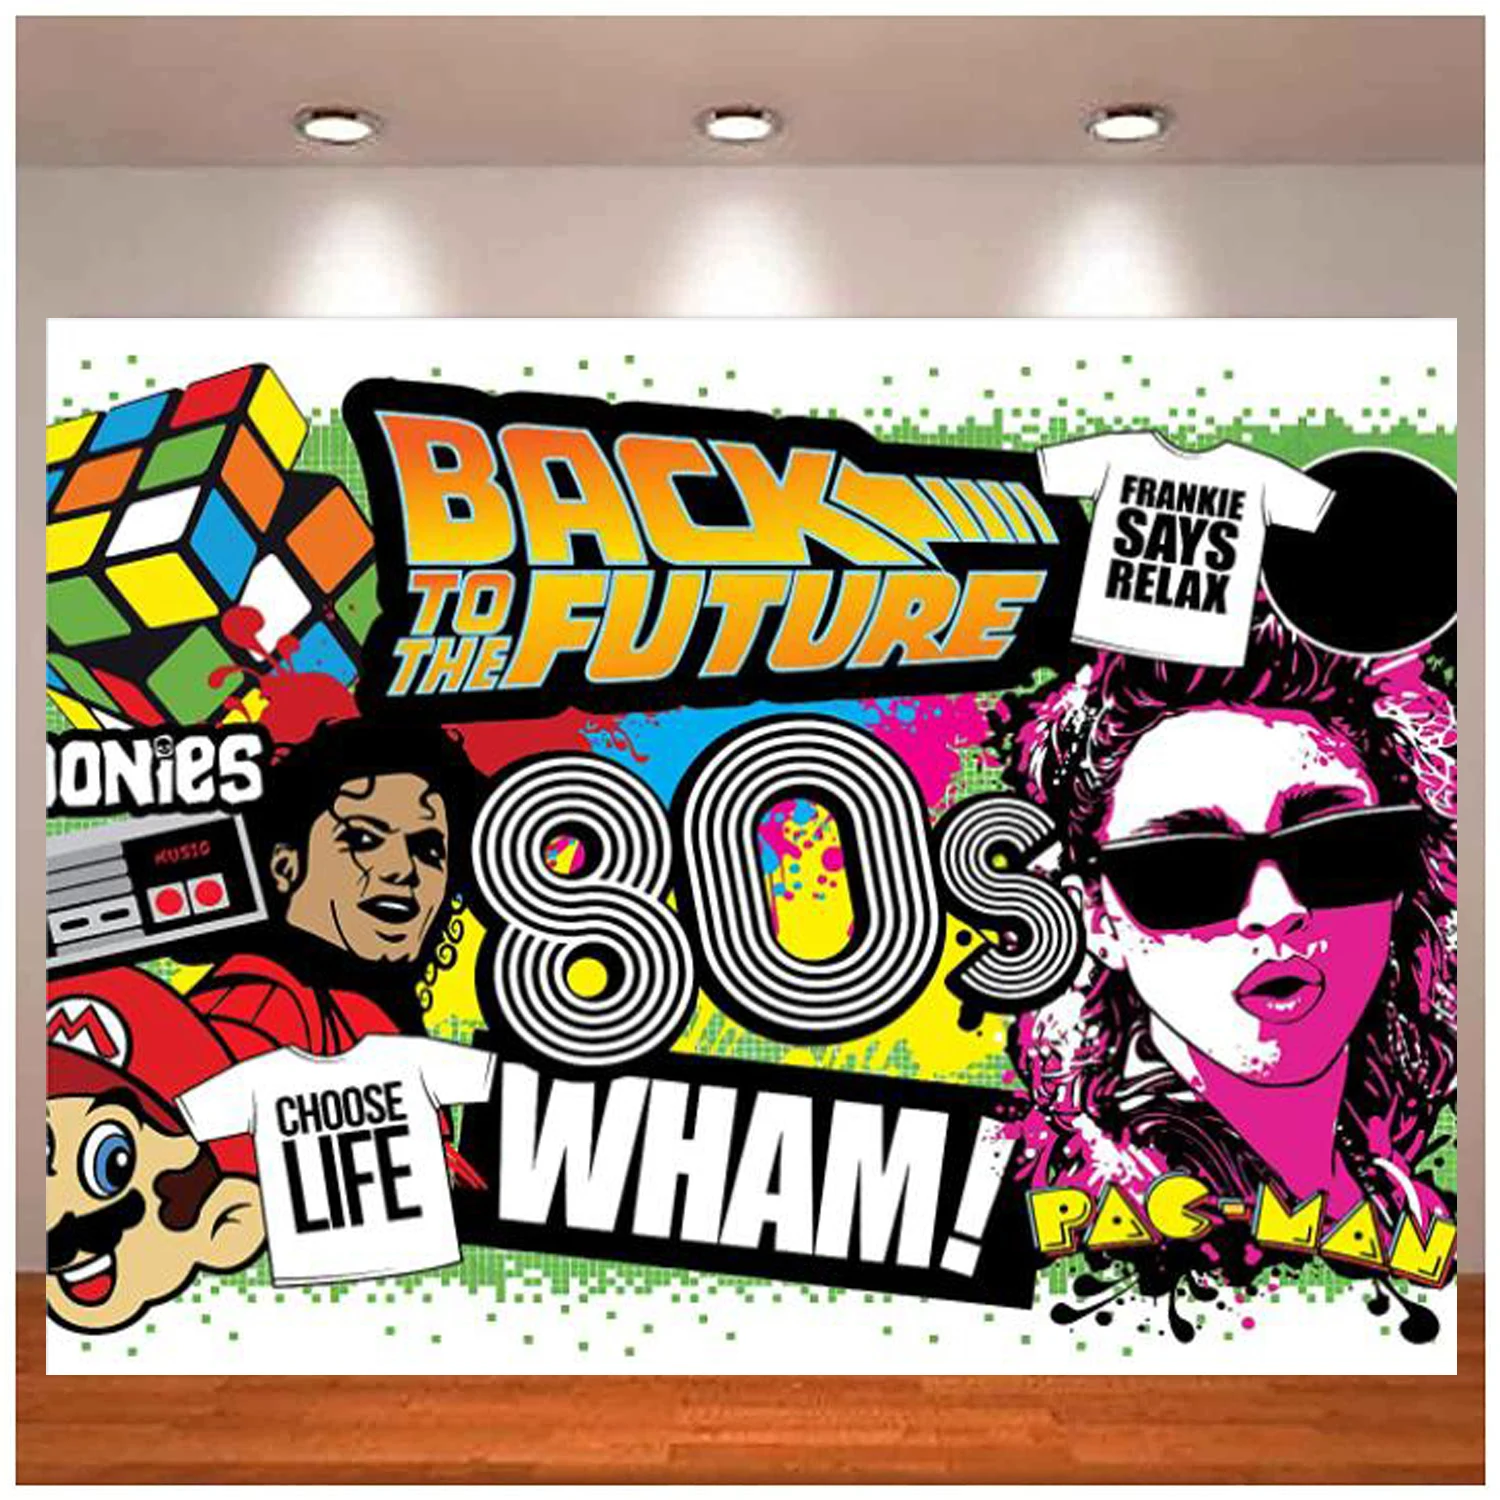 80s tema fotografia pano de fundo hip hop graffiti volta para a festa dos anos 80 banner fundo da parede decorações adereços cartaz